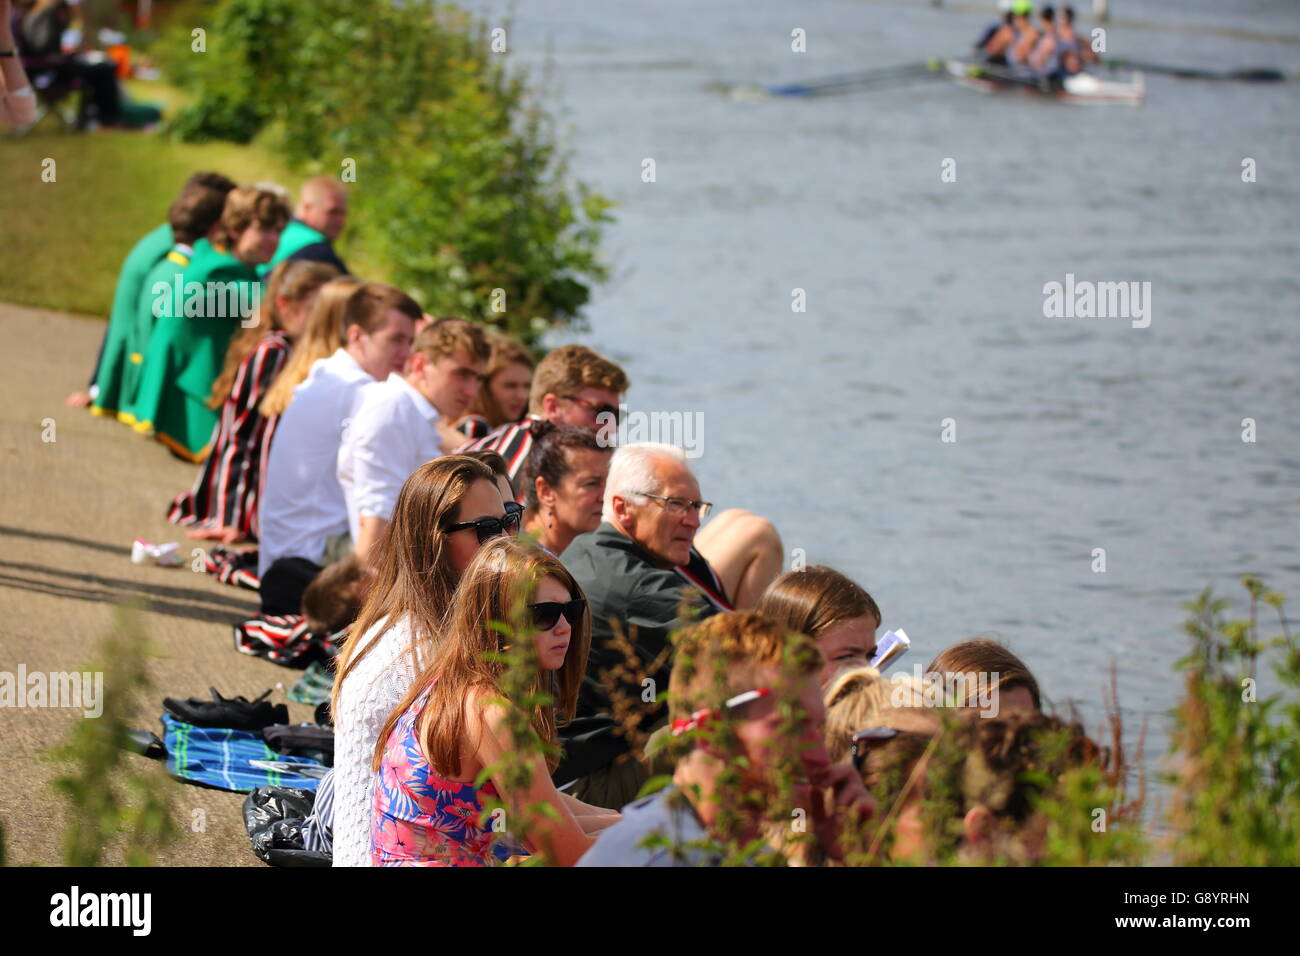 Ruderer aus der ganzen Welt kamen zu den jährlichen Henley Royal Regatta 2016. Tausende von Zuschauer strömten zum Fluss, den Wettbewerb zu sehen. Stockfoto